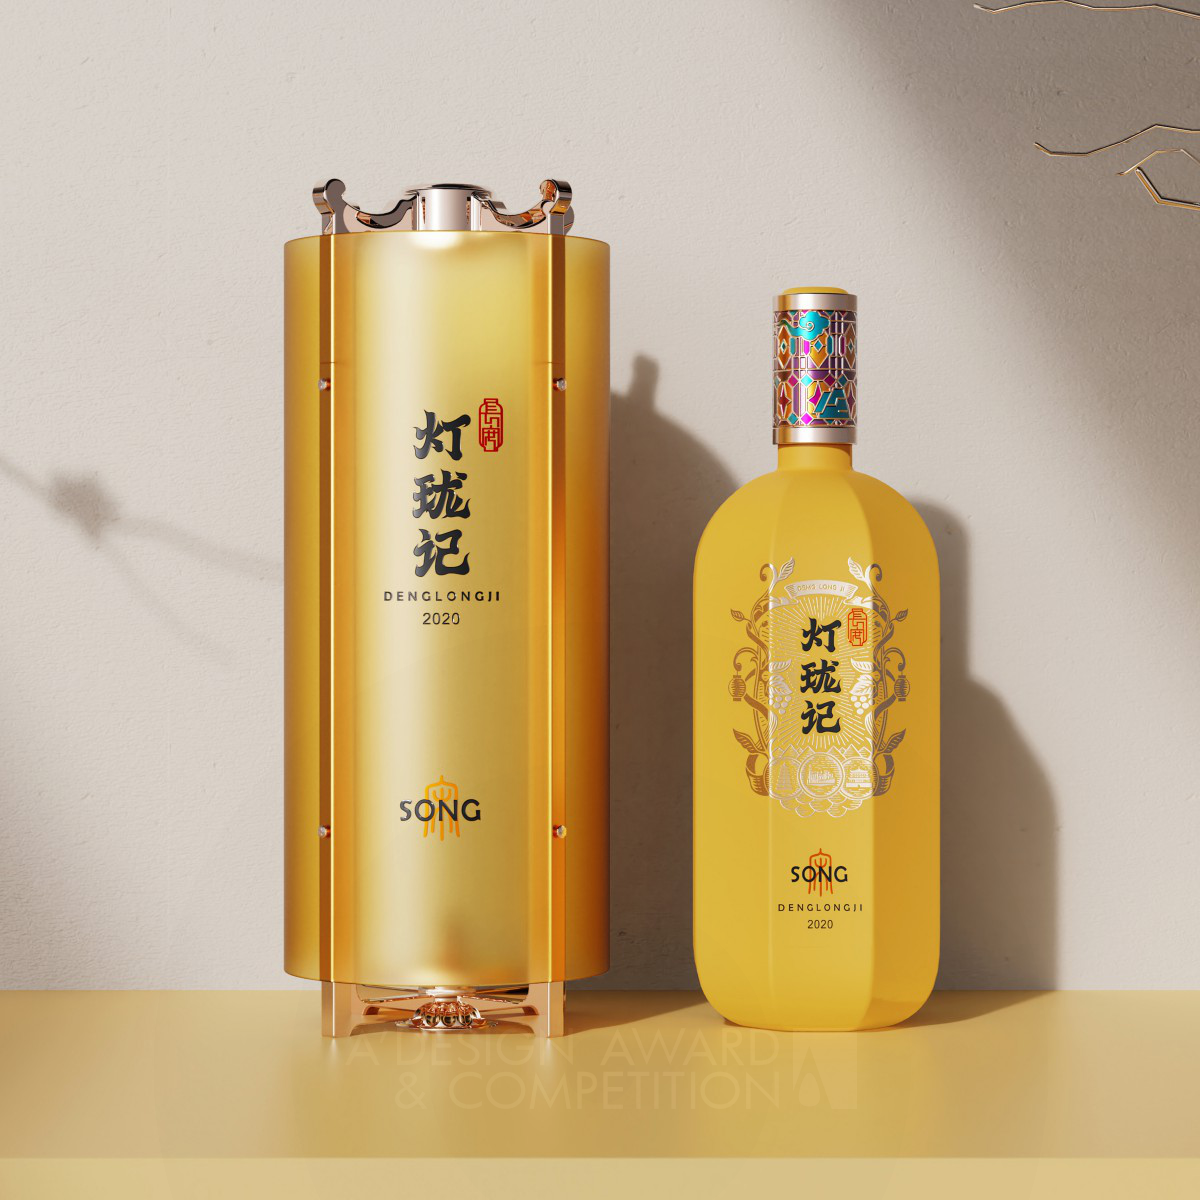 Deng Long Ji Alcoholic Beverage Packaging by Wen Liu, Qiumin Chen and Weijie Kang Bronze Packaging Design Award Winner 2021 